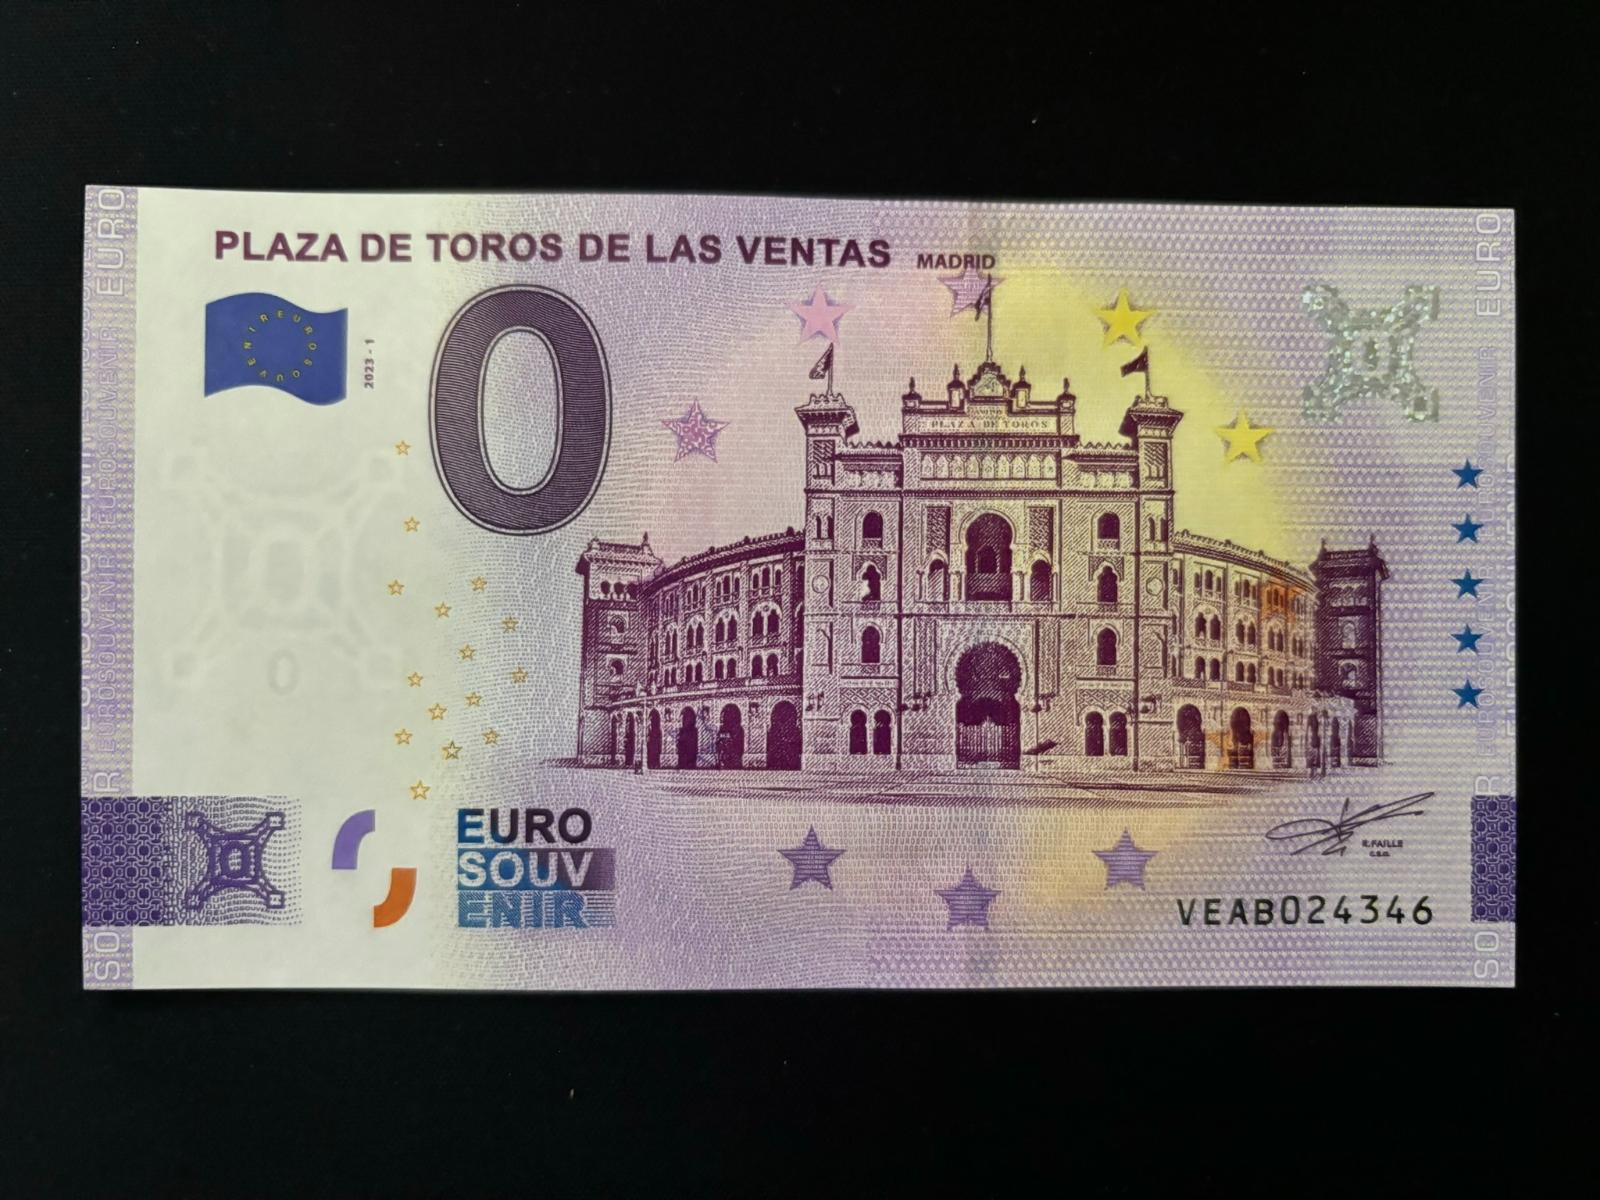 0 Euro suvenír - PLAZA DE TOROS DE LAV VENTAS (ŠPANIELSKO) - Zberateľstvo